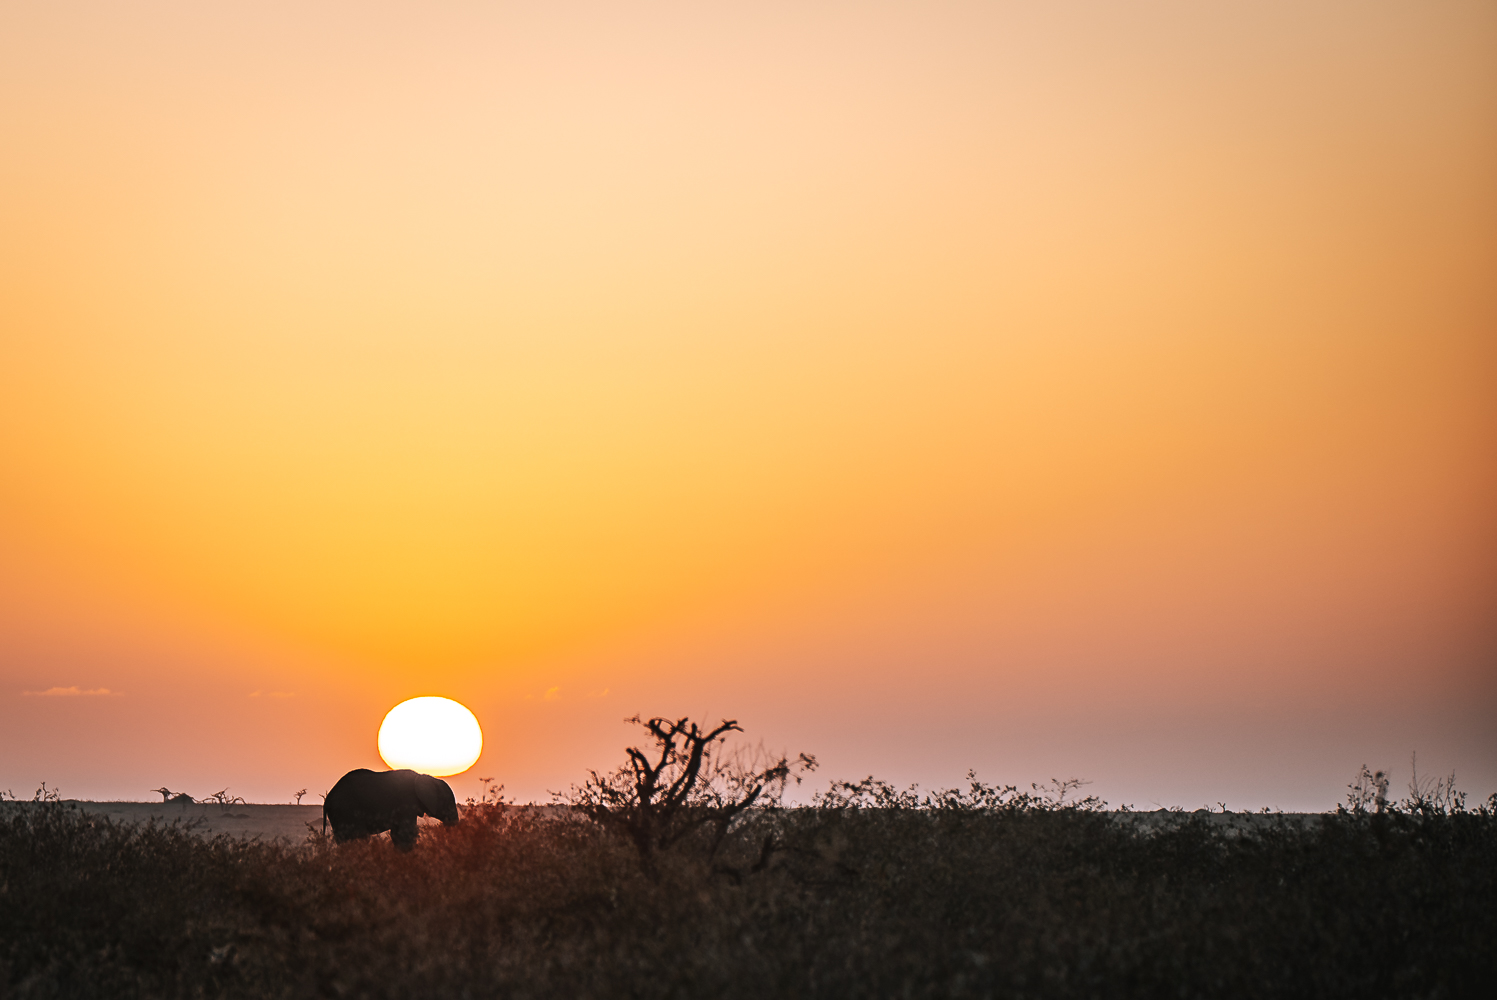 肯尼亚莫吉保护区的神奇日落